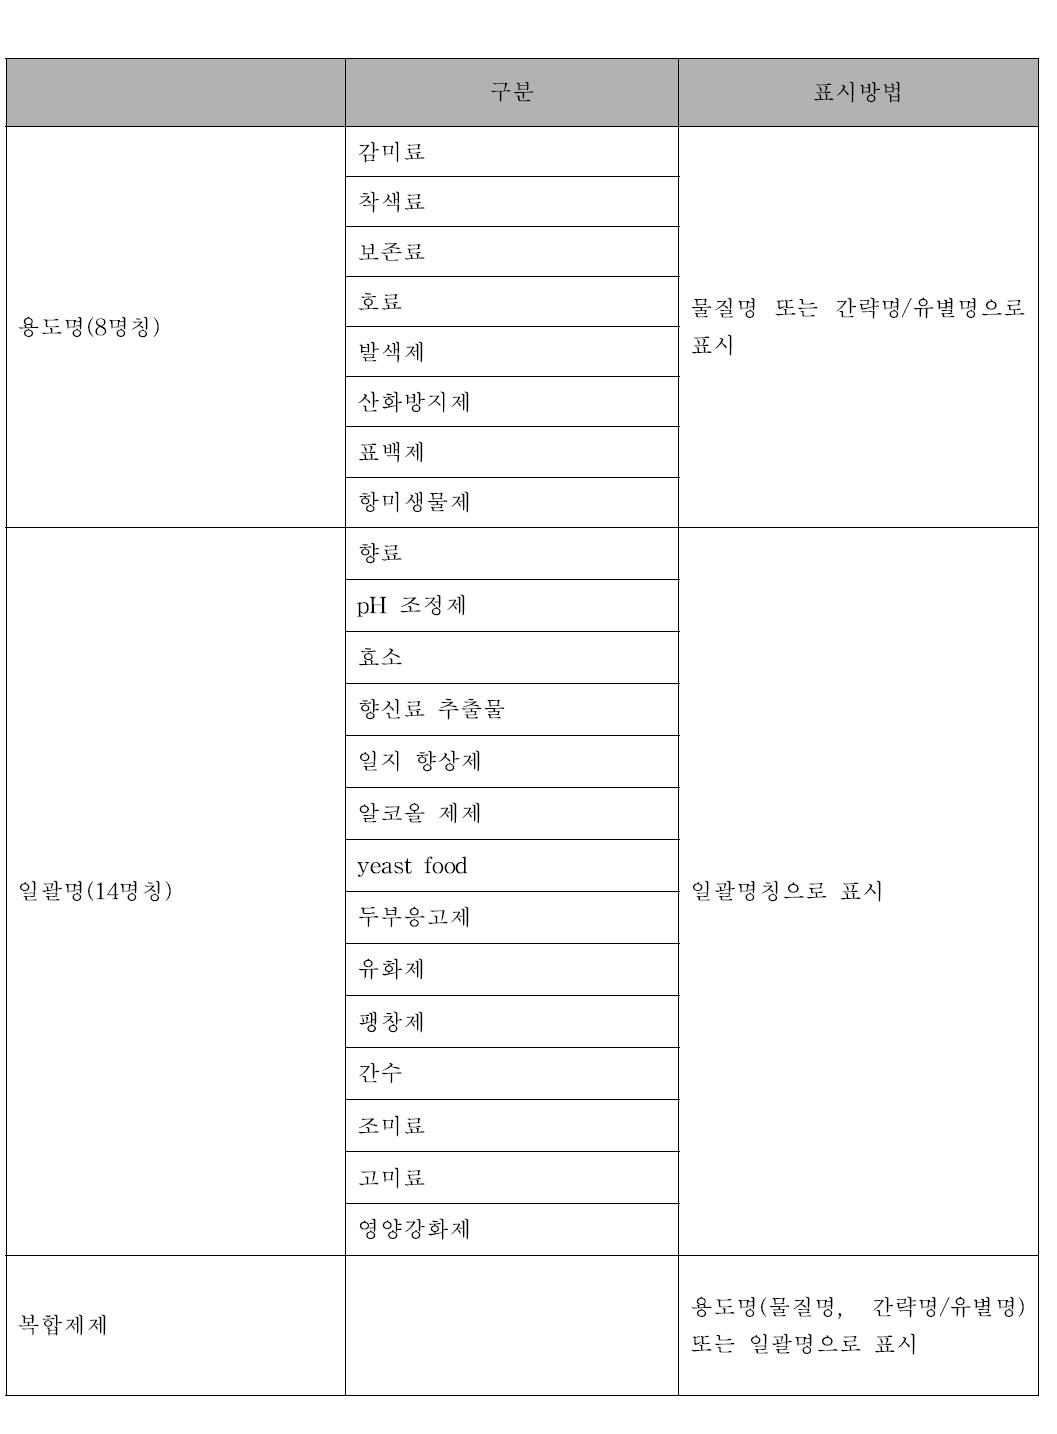 일본 혼합제제 분류 (Classification of Food Additive Mixtures in Japan)